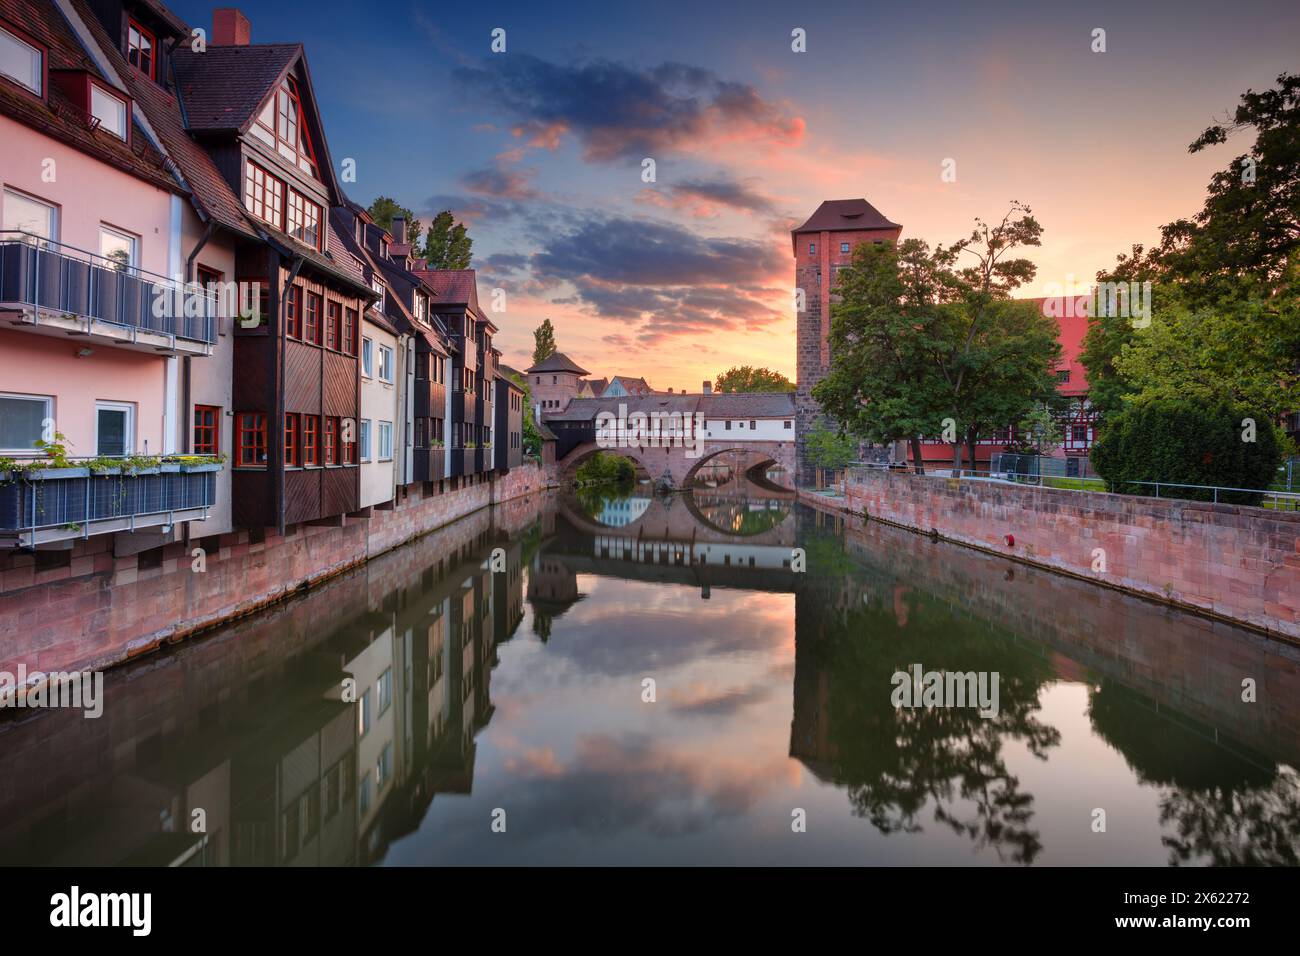 Nuremberg, Allemagne. Image de paysage urbain de la vieille ville de Nuremberg, Allemagne au coucher du soleil du printemps. Banque D'Images